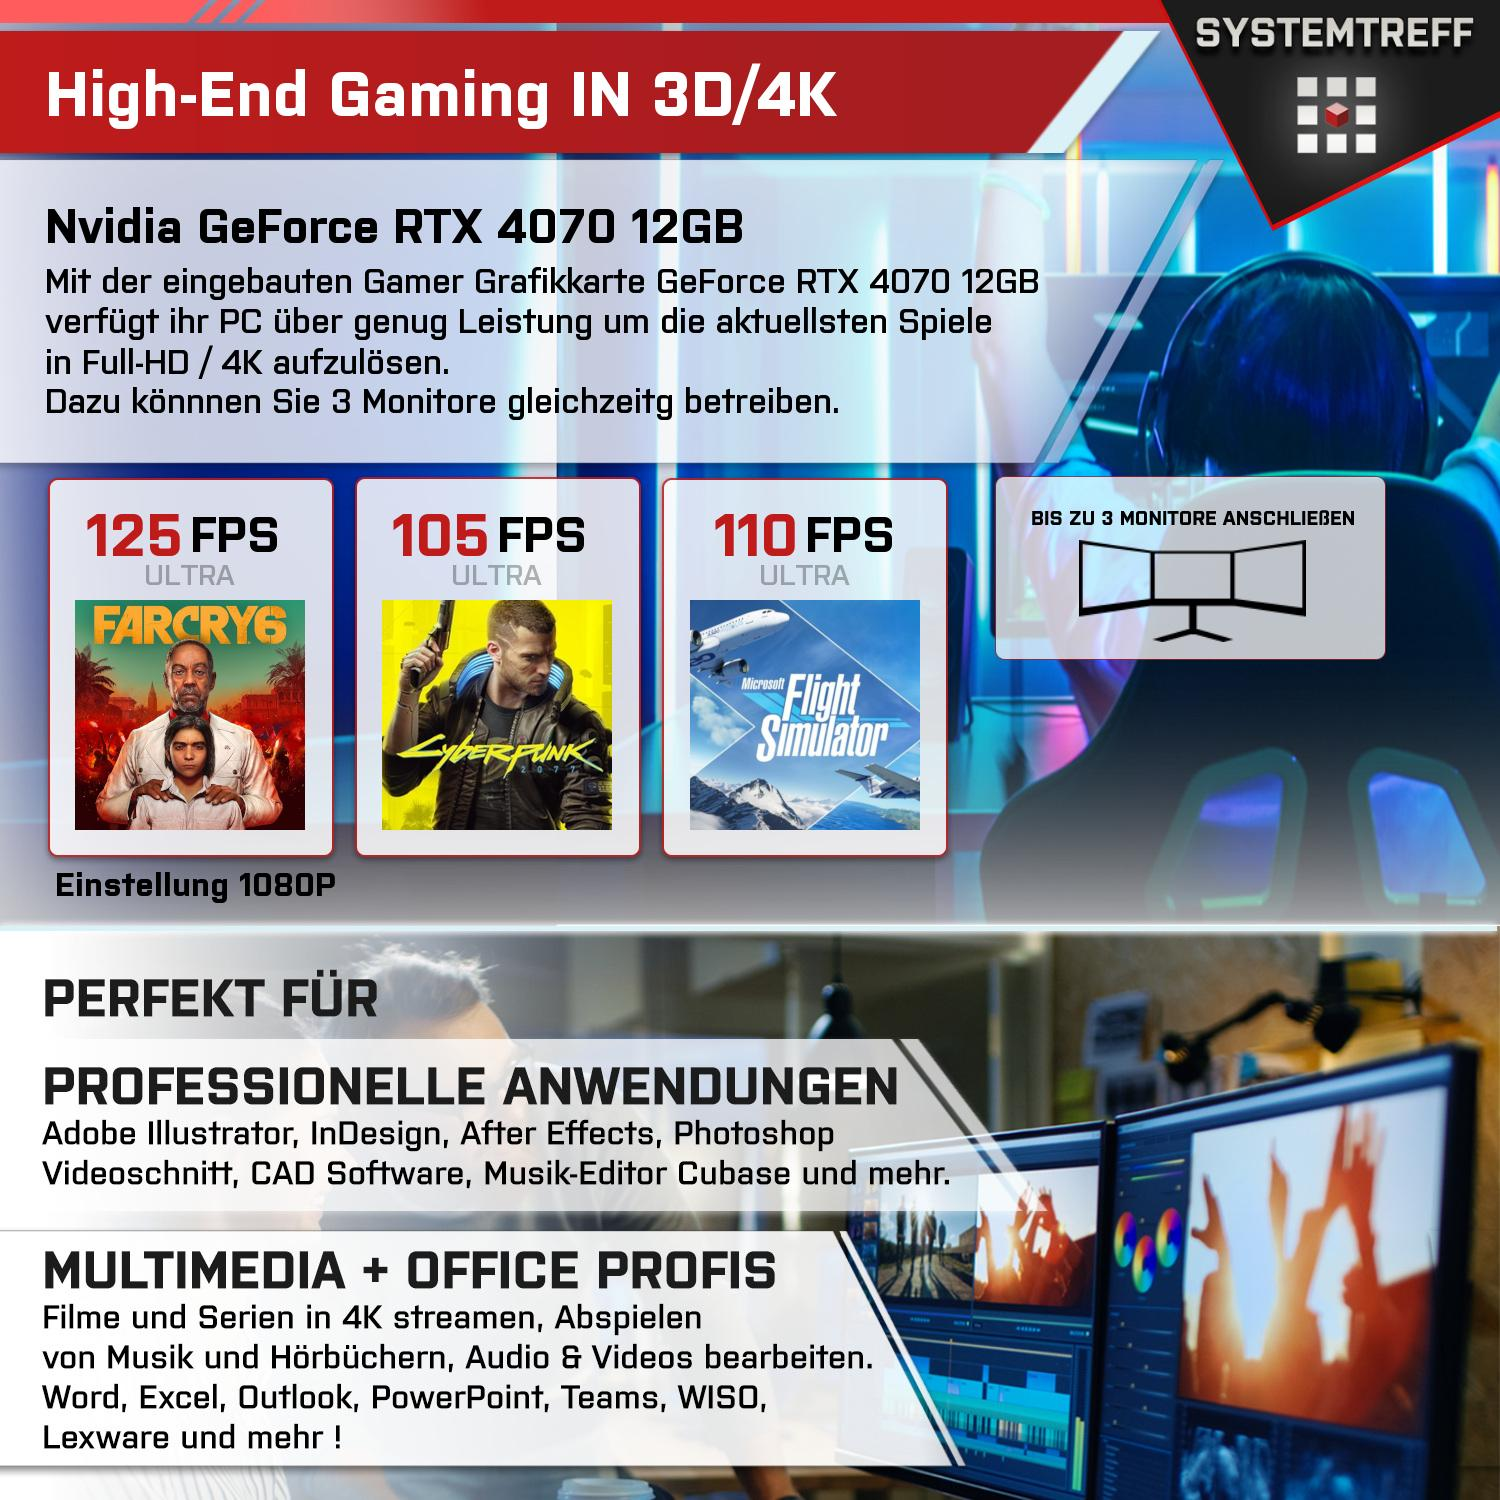 SYSTEMTREFF Gaming Komplett AMD Ryzen 9 RAM, 5900X, 5900X PC GB 12GB GDDR6, 1000 Komplett RTX GB mSSD, Prozessor, 12 4070 Nvidia GeForce 32 mit GB